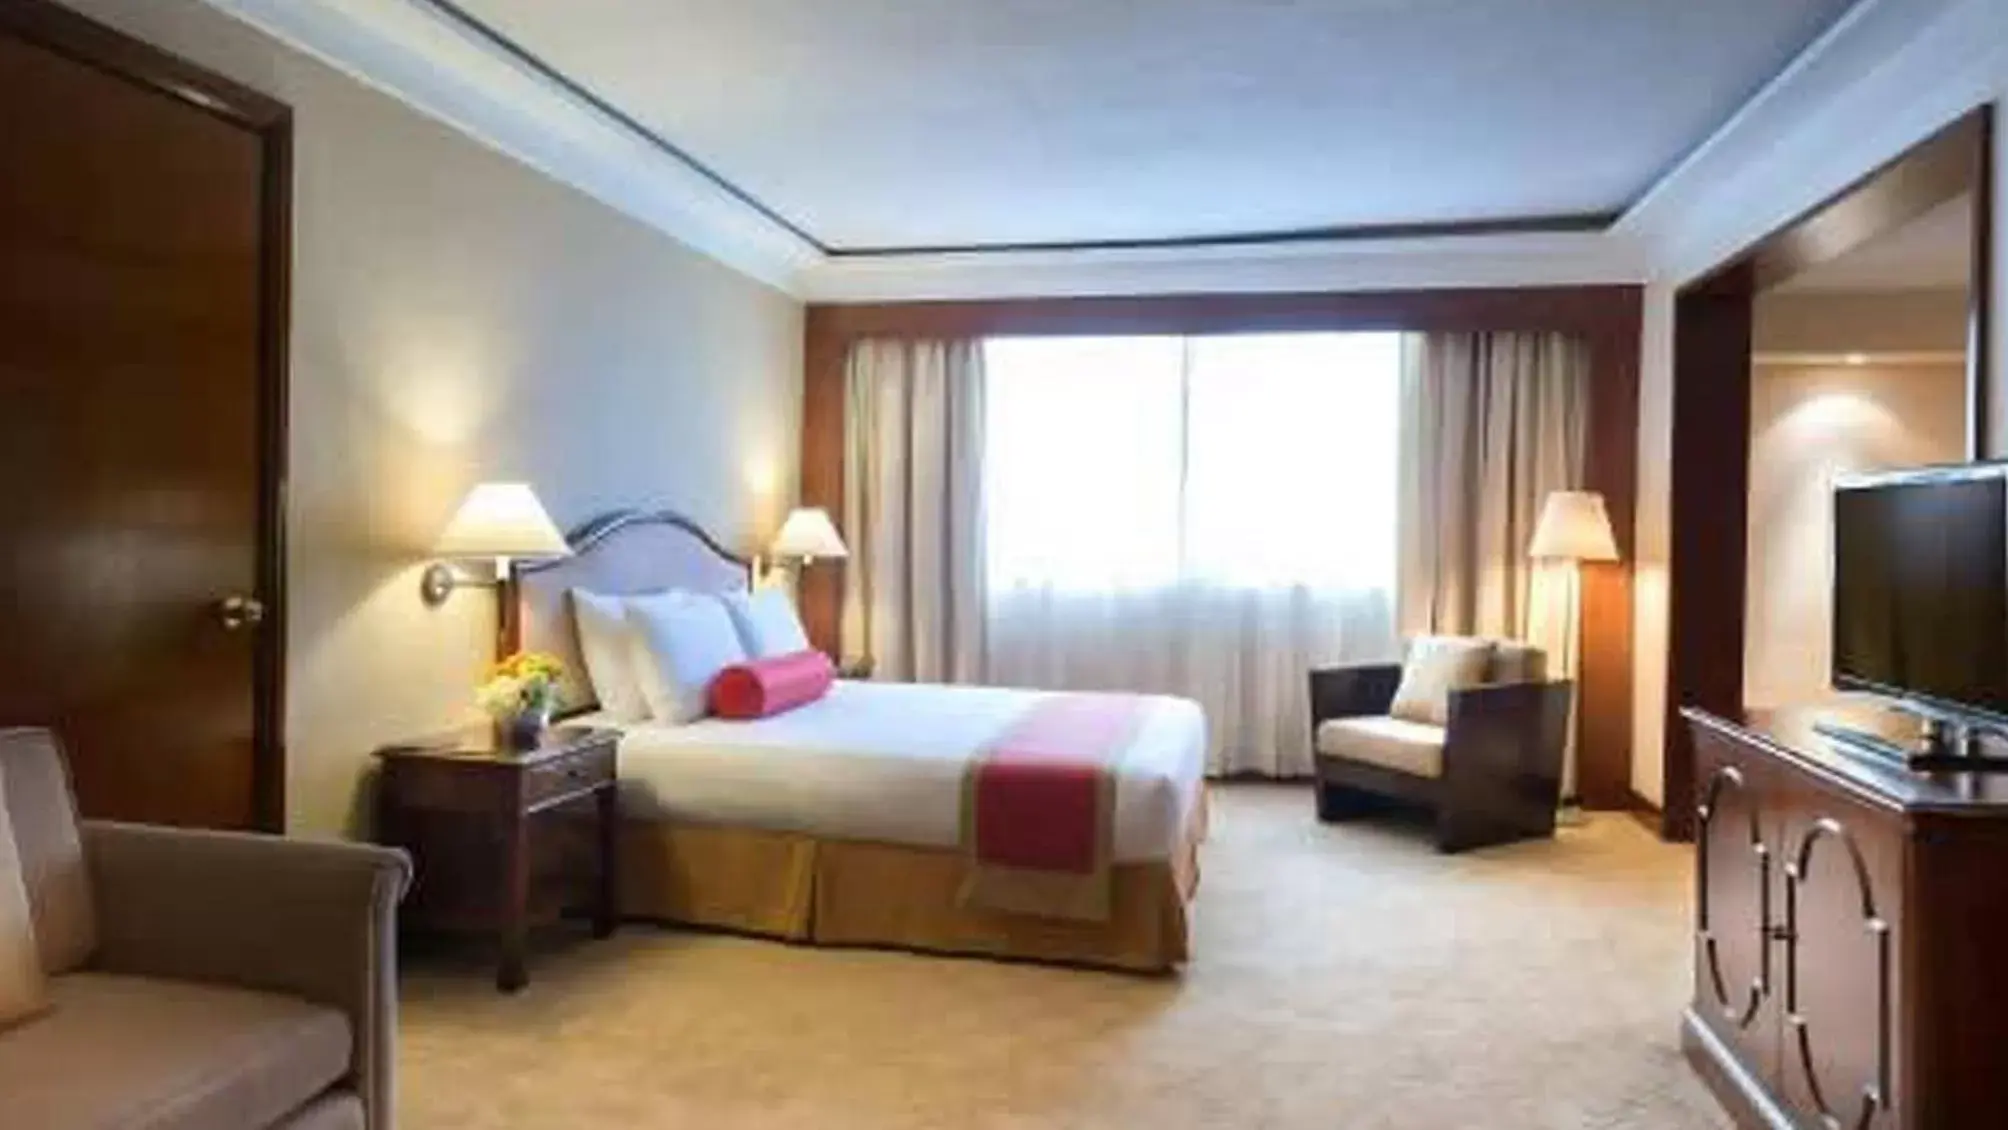 Bedroom in Marco Polo Plaza Cebu